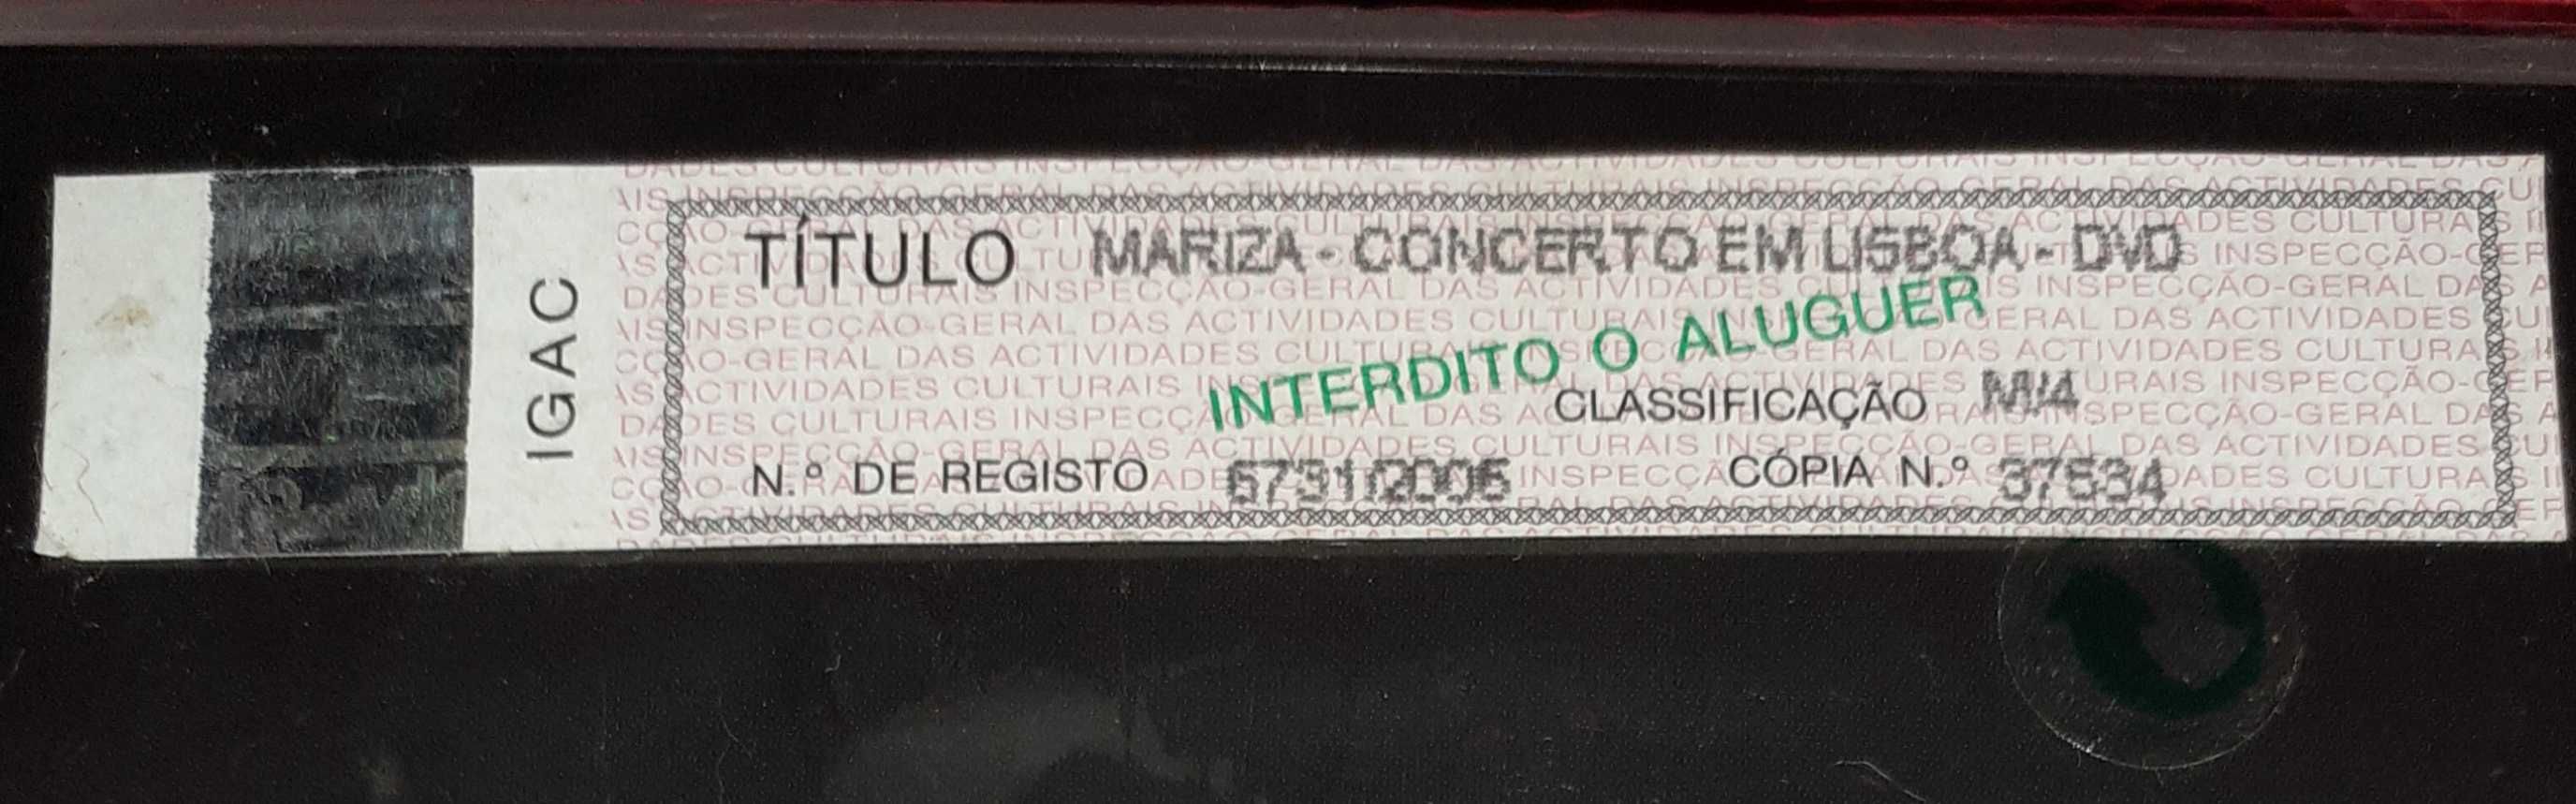 DVD Mariza-Concerto em Lisboa- Novo